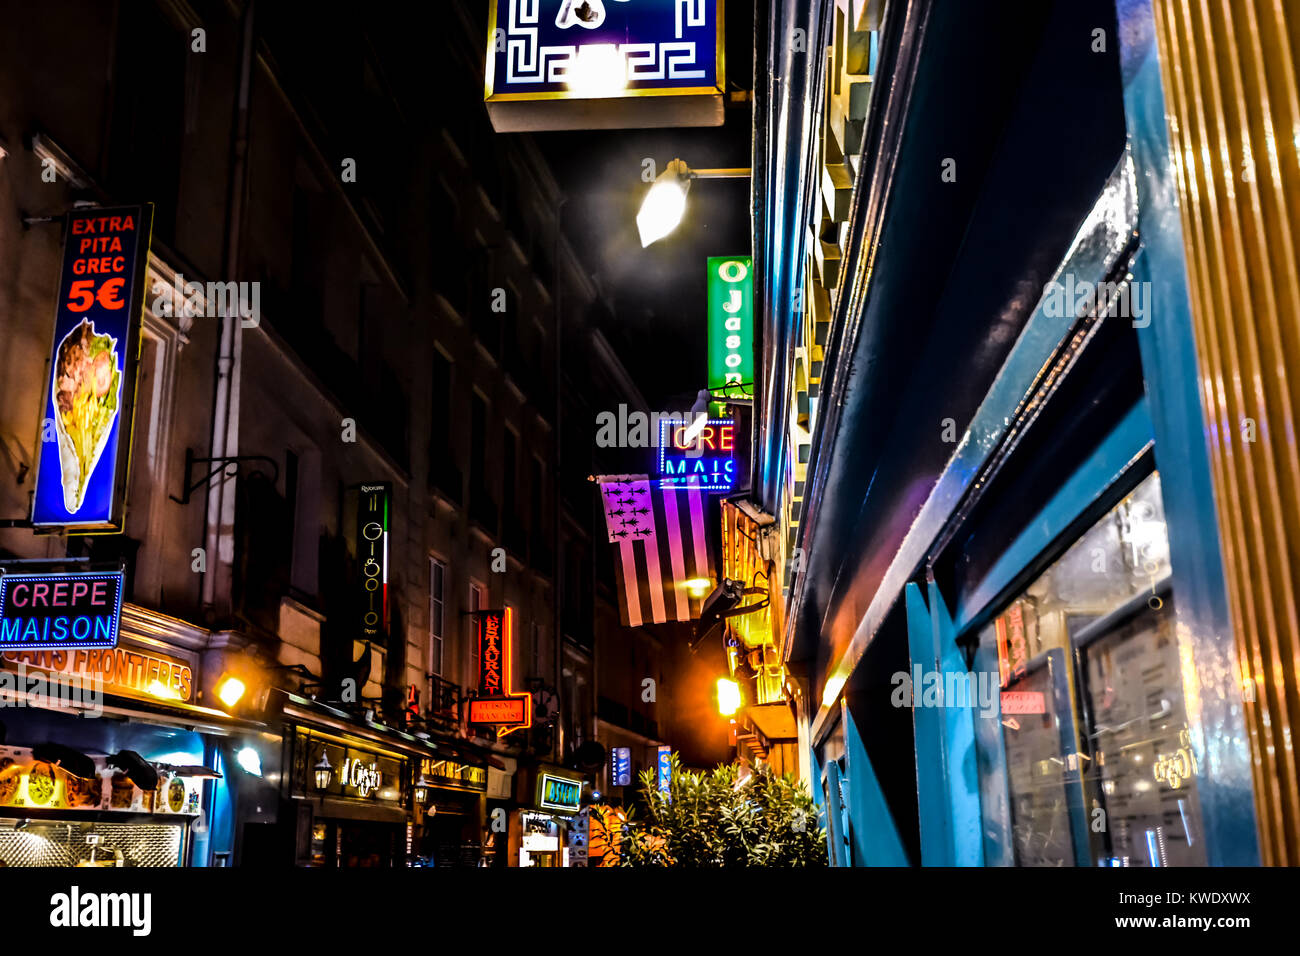 La fin de nuit dans le Quartier Latin de Paris France avec des néons et des lumières avec une variété de cafés et restaurants Banque D'Images